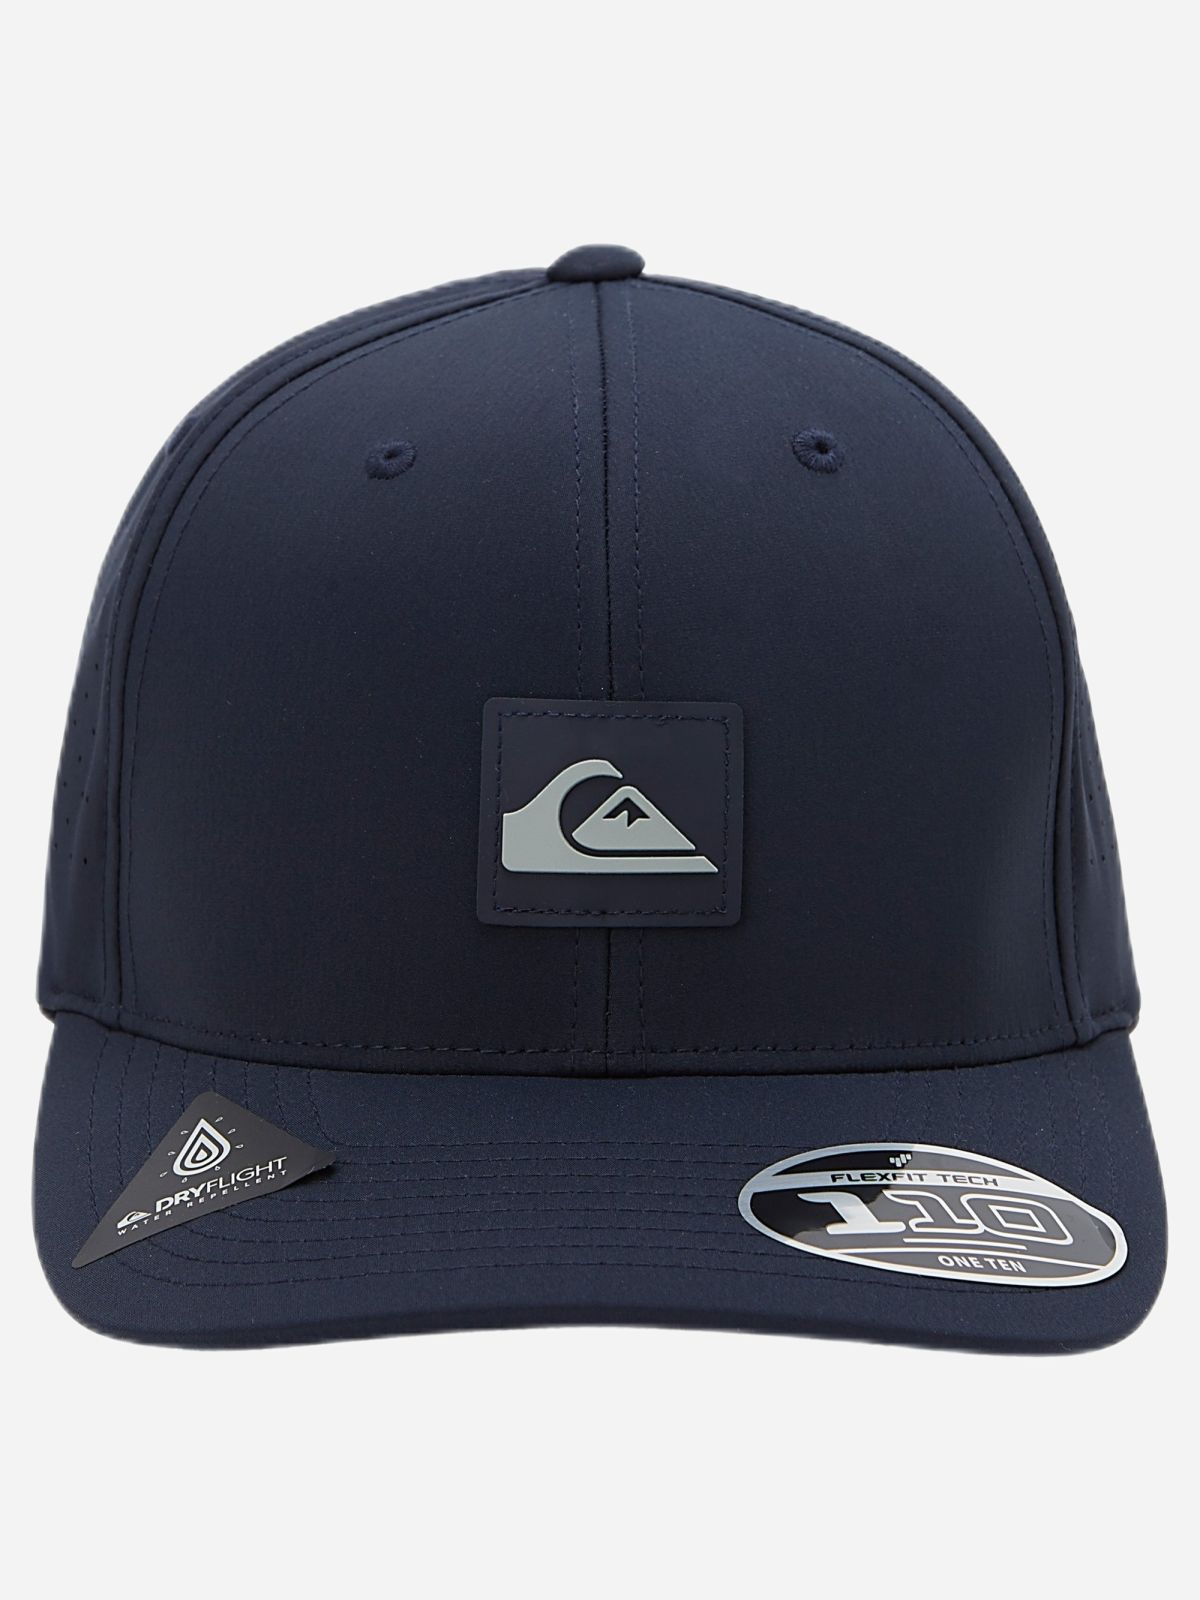  כובע מצחייה עם לוגו של QUIKSILVER